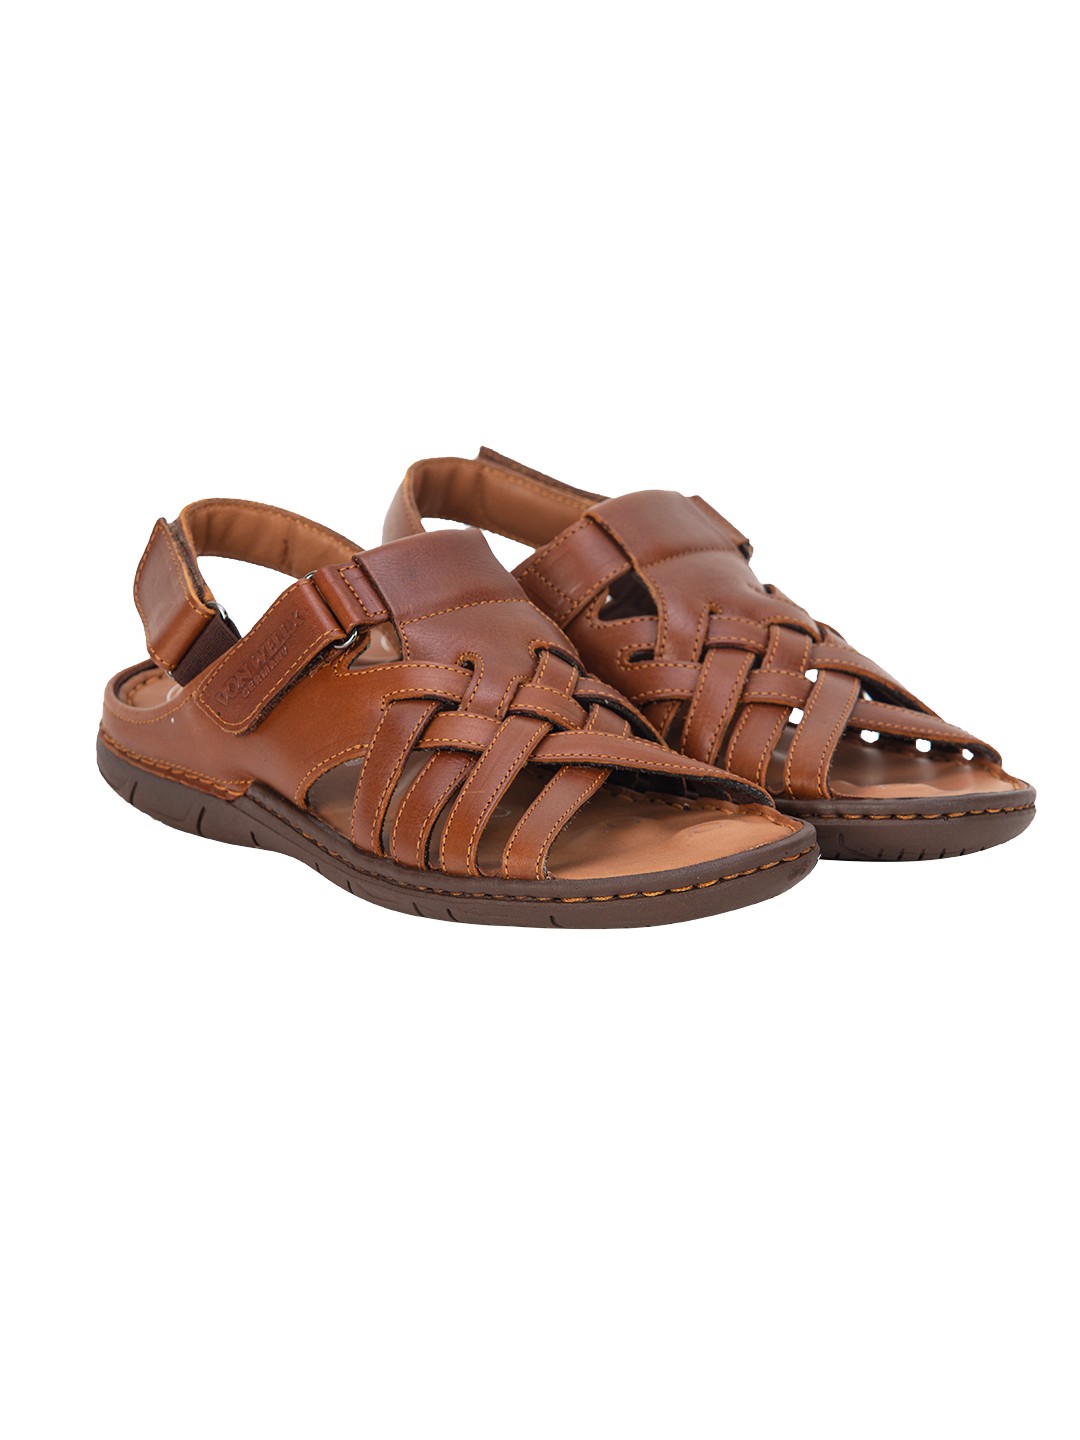 Buy Von Wellx Germany Comfort Stride Tan Sandals Online in Qatar